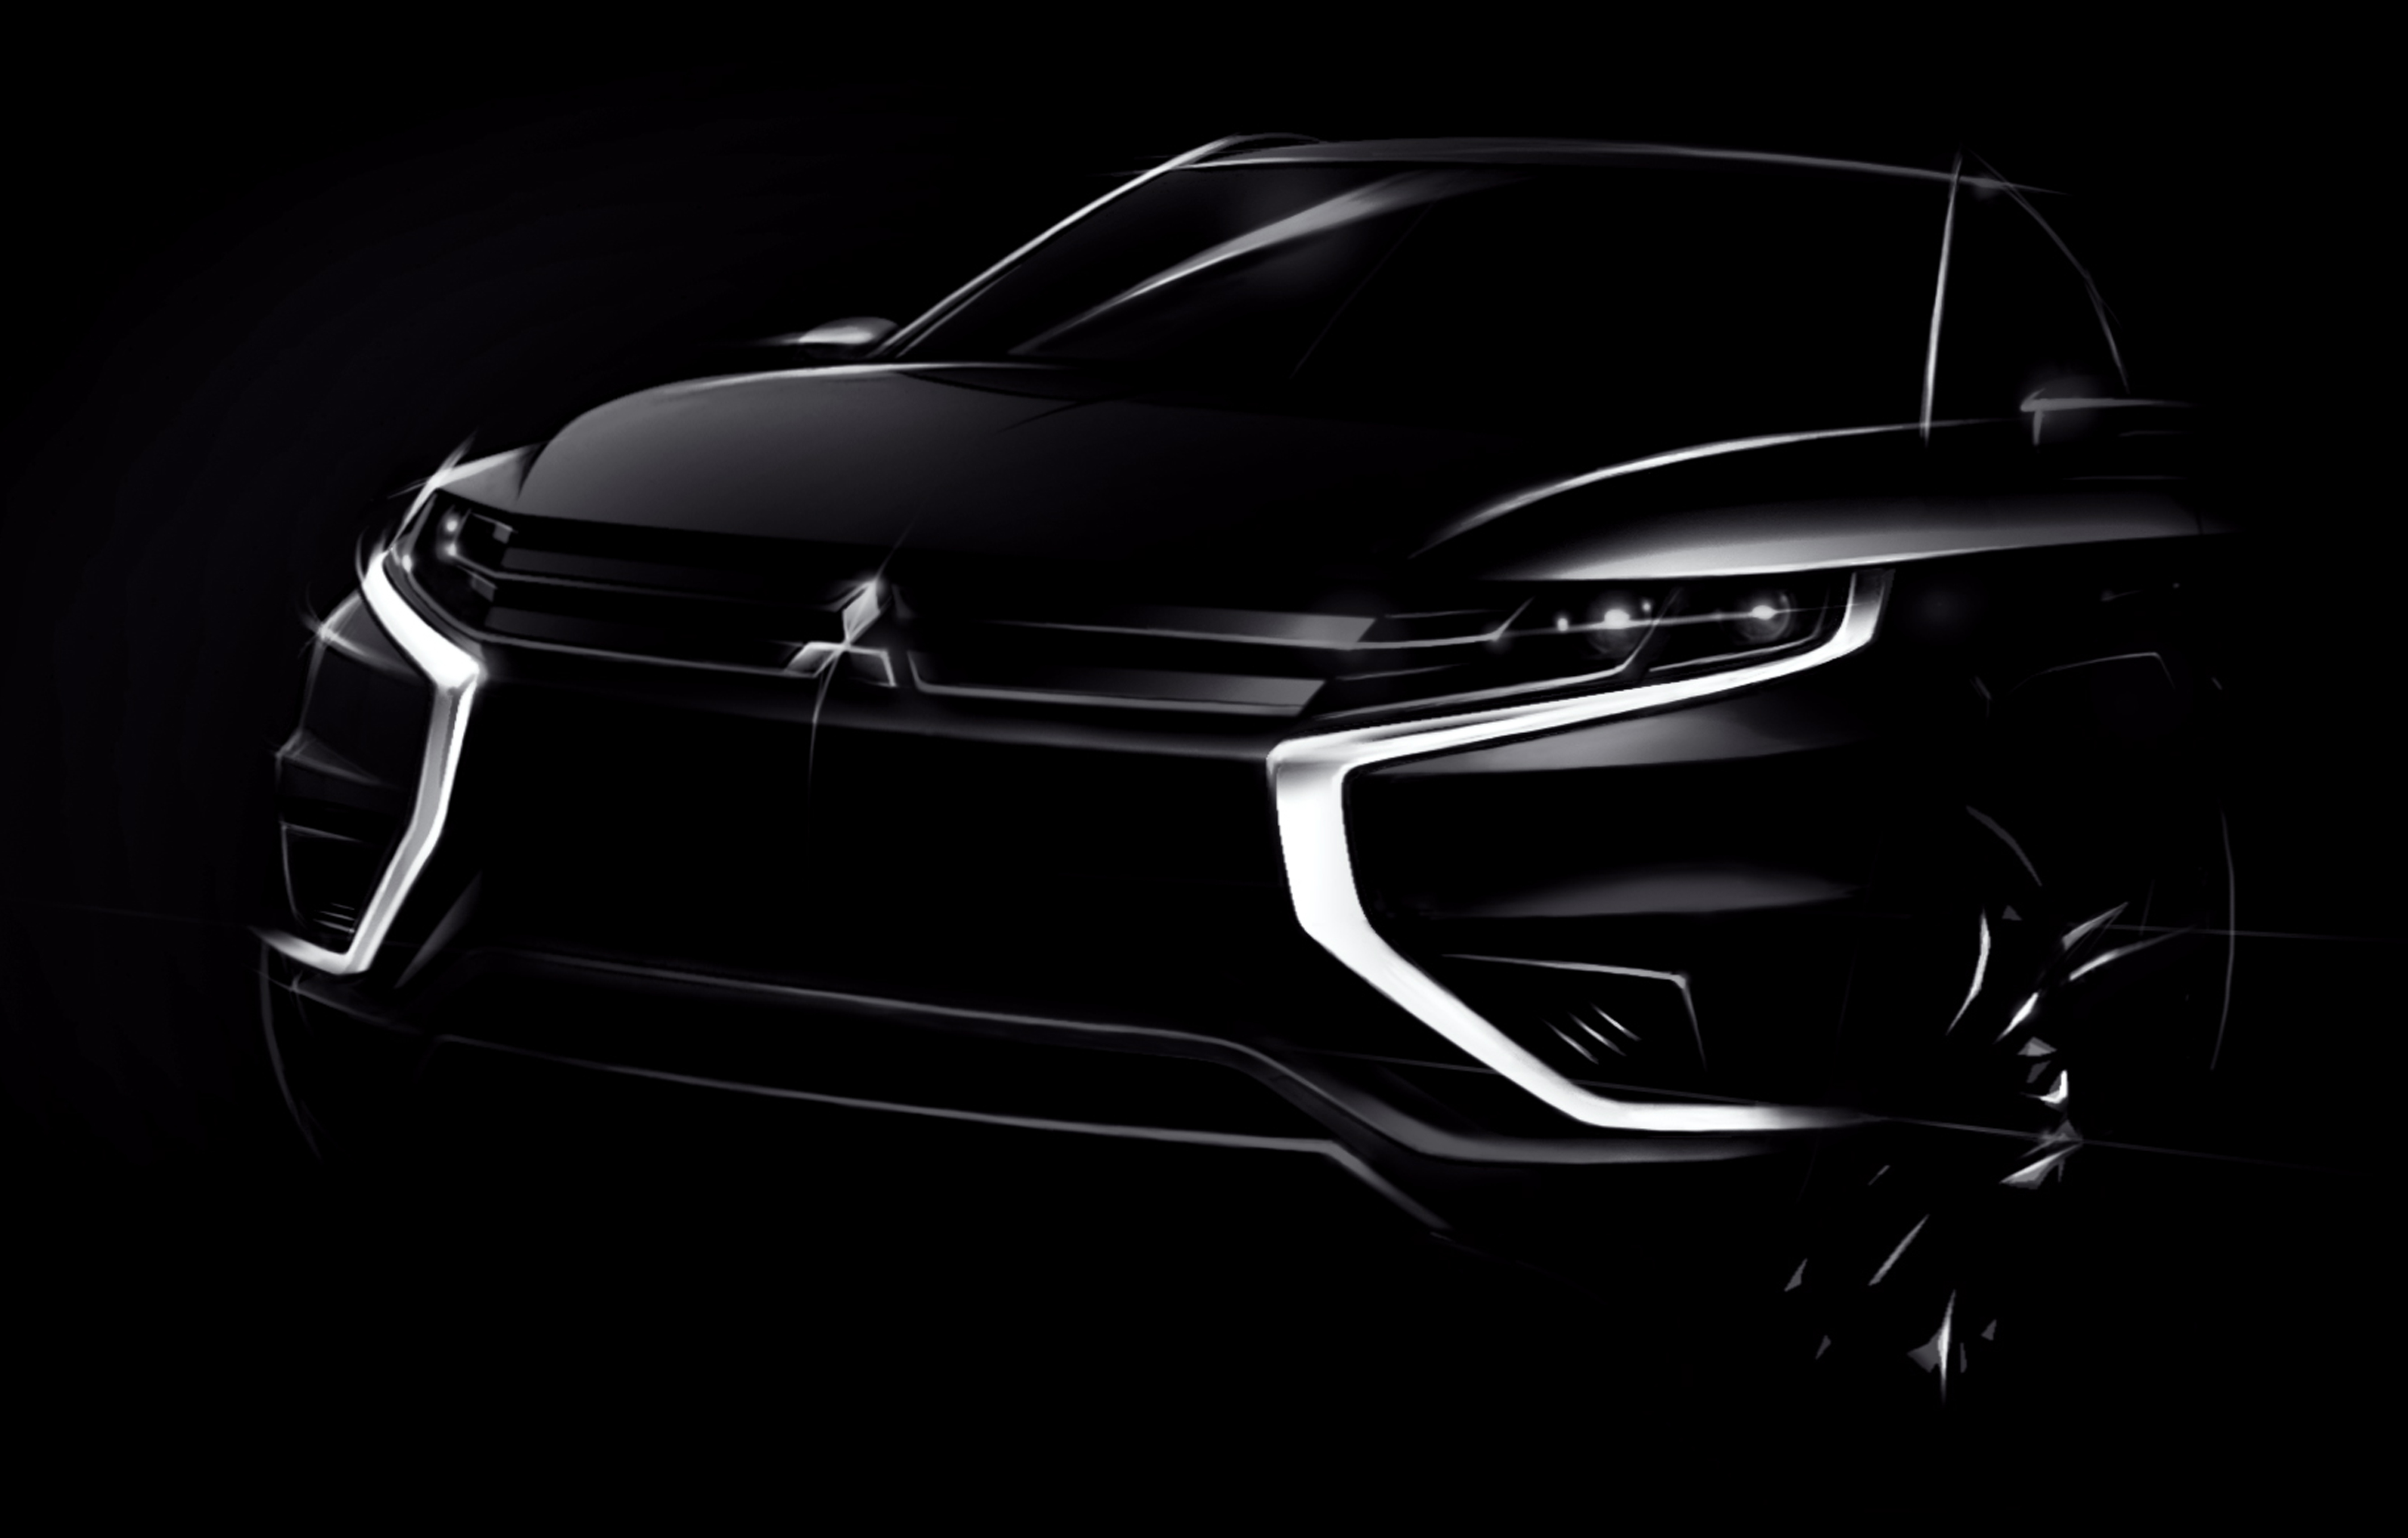  Mitsubishi al Motor Show Parigi 2014 con Outlander PHEV Concept-S